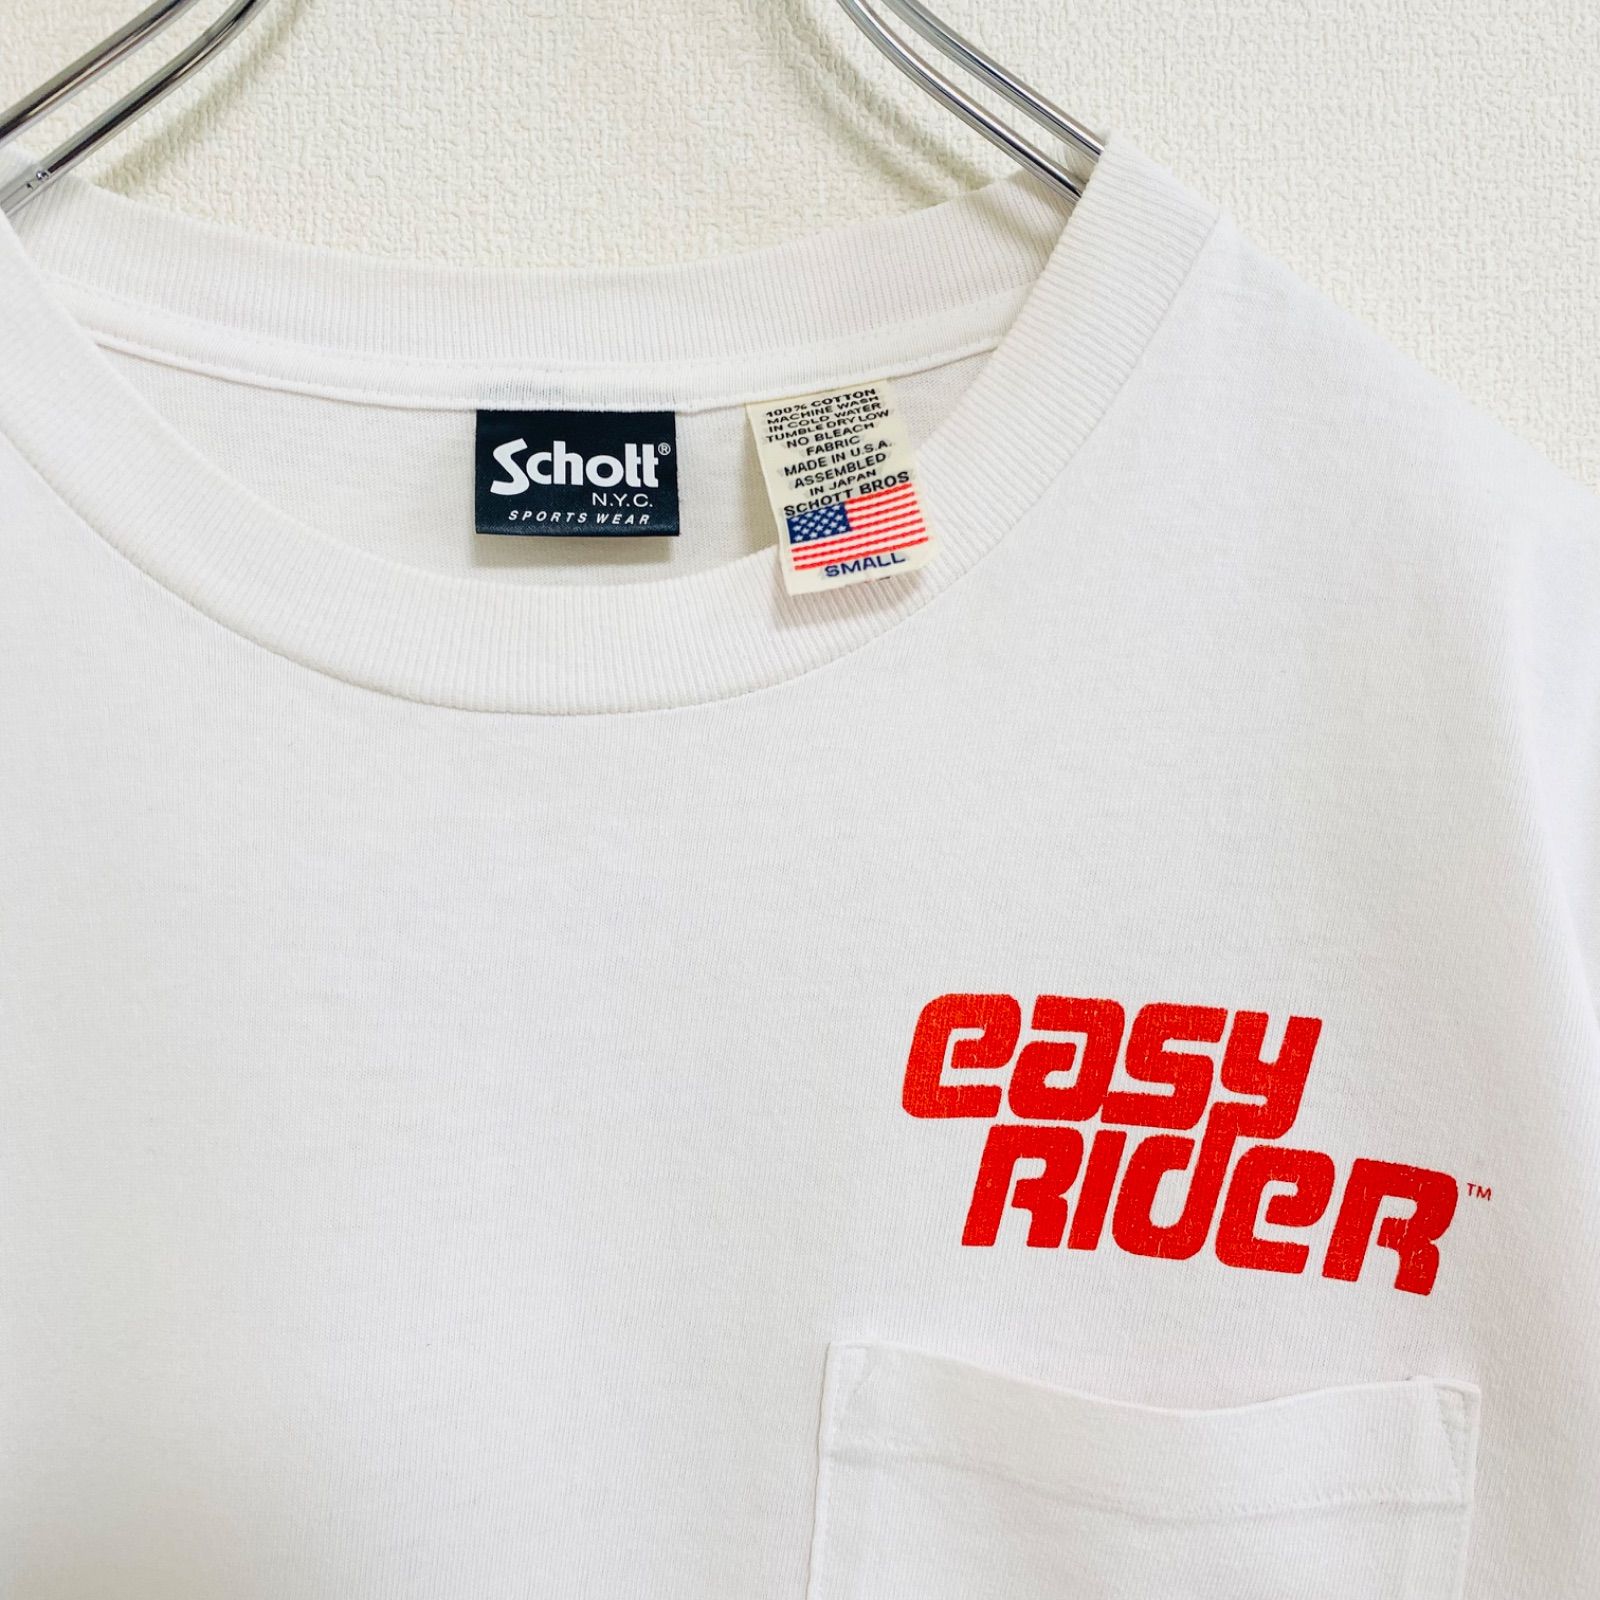 ショット Schoot イージーライダー eazy rider 半袖 Tシャツ メンズ S ...